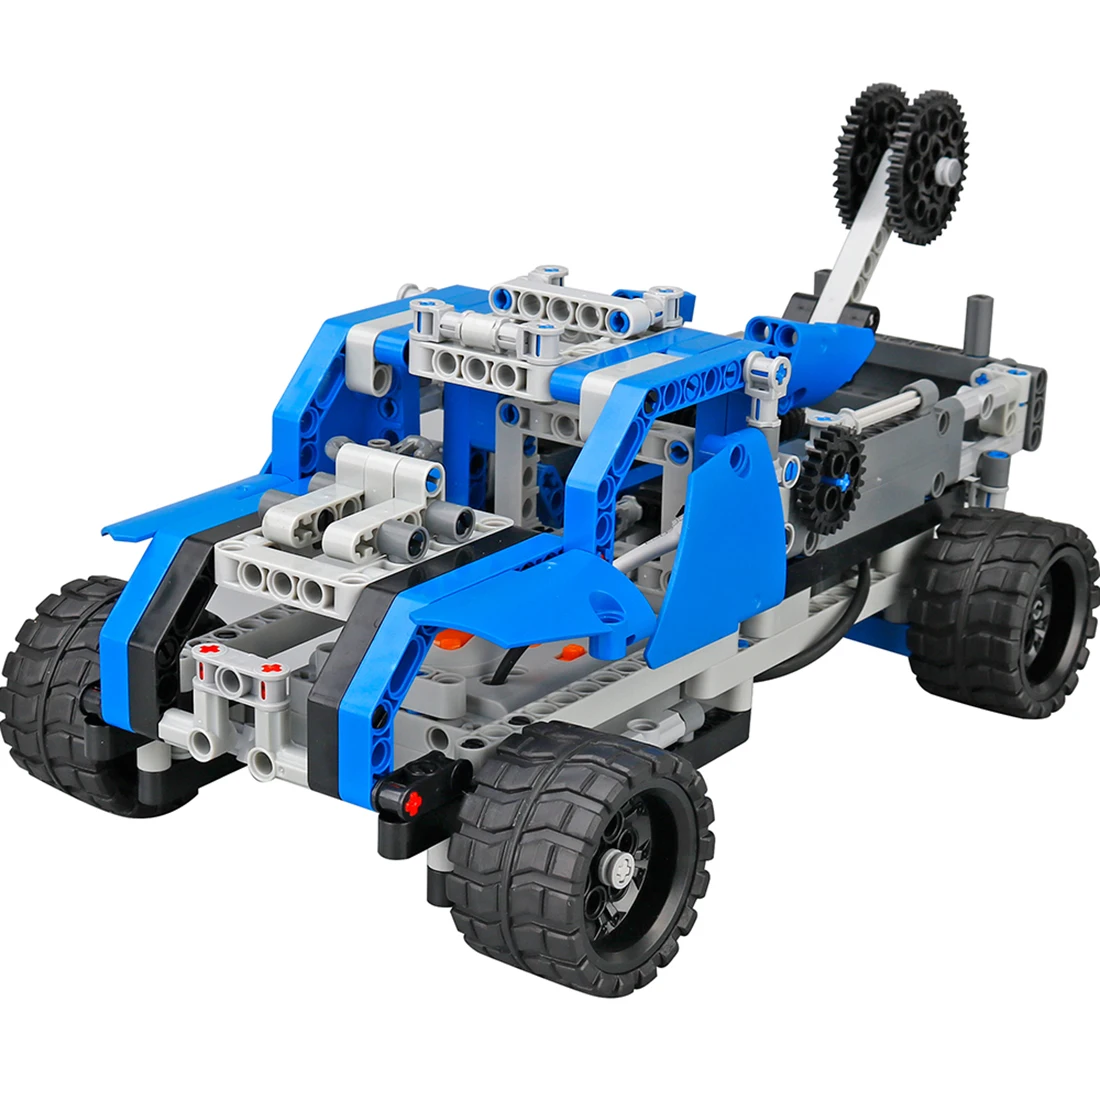 DIY строительный блок высокая скорость RC автомобиль внедорожный автомобиль деформация автомобиля обучающая игрушка-Геркулес тип синий